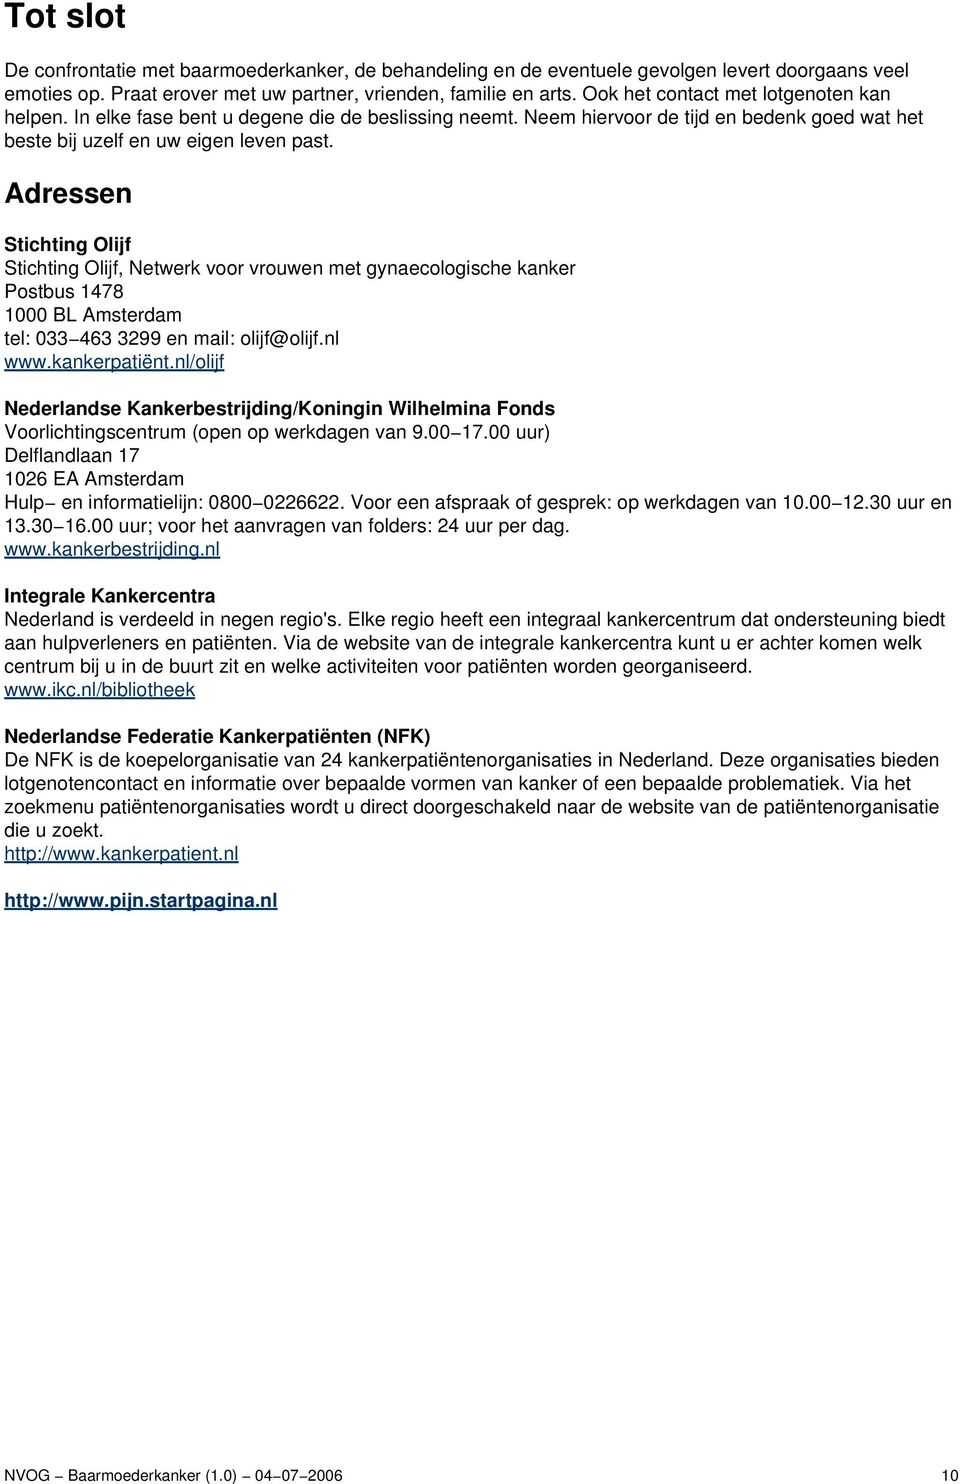 Adressen Stichting Olijf Stichting Olijf, Netwerk voor vrouwen met gynaecologische kanker Postbus 1478 1000 BL Amsterdam tel: 033 463 3299 en mail: olijf@olijf.nl www.kankerpatiënt.